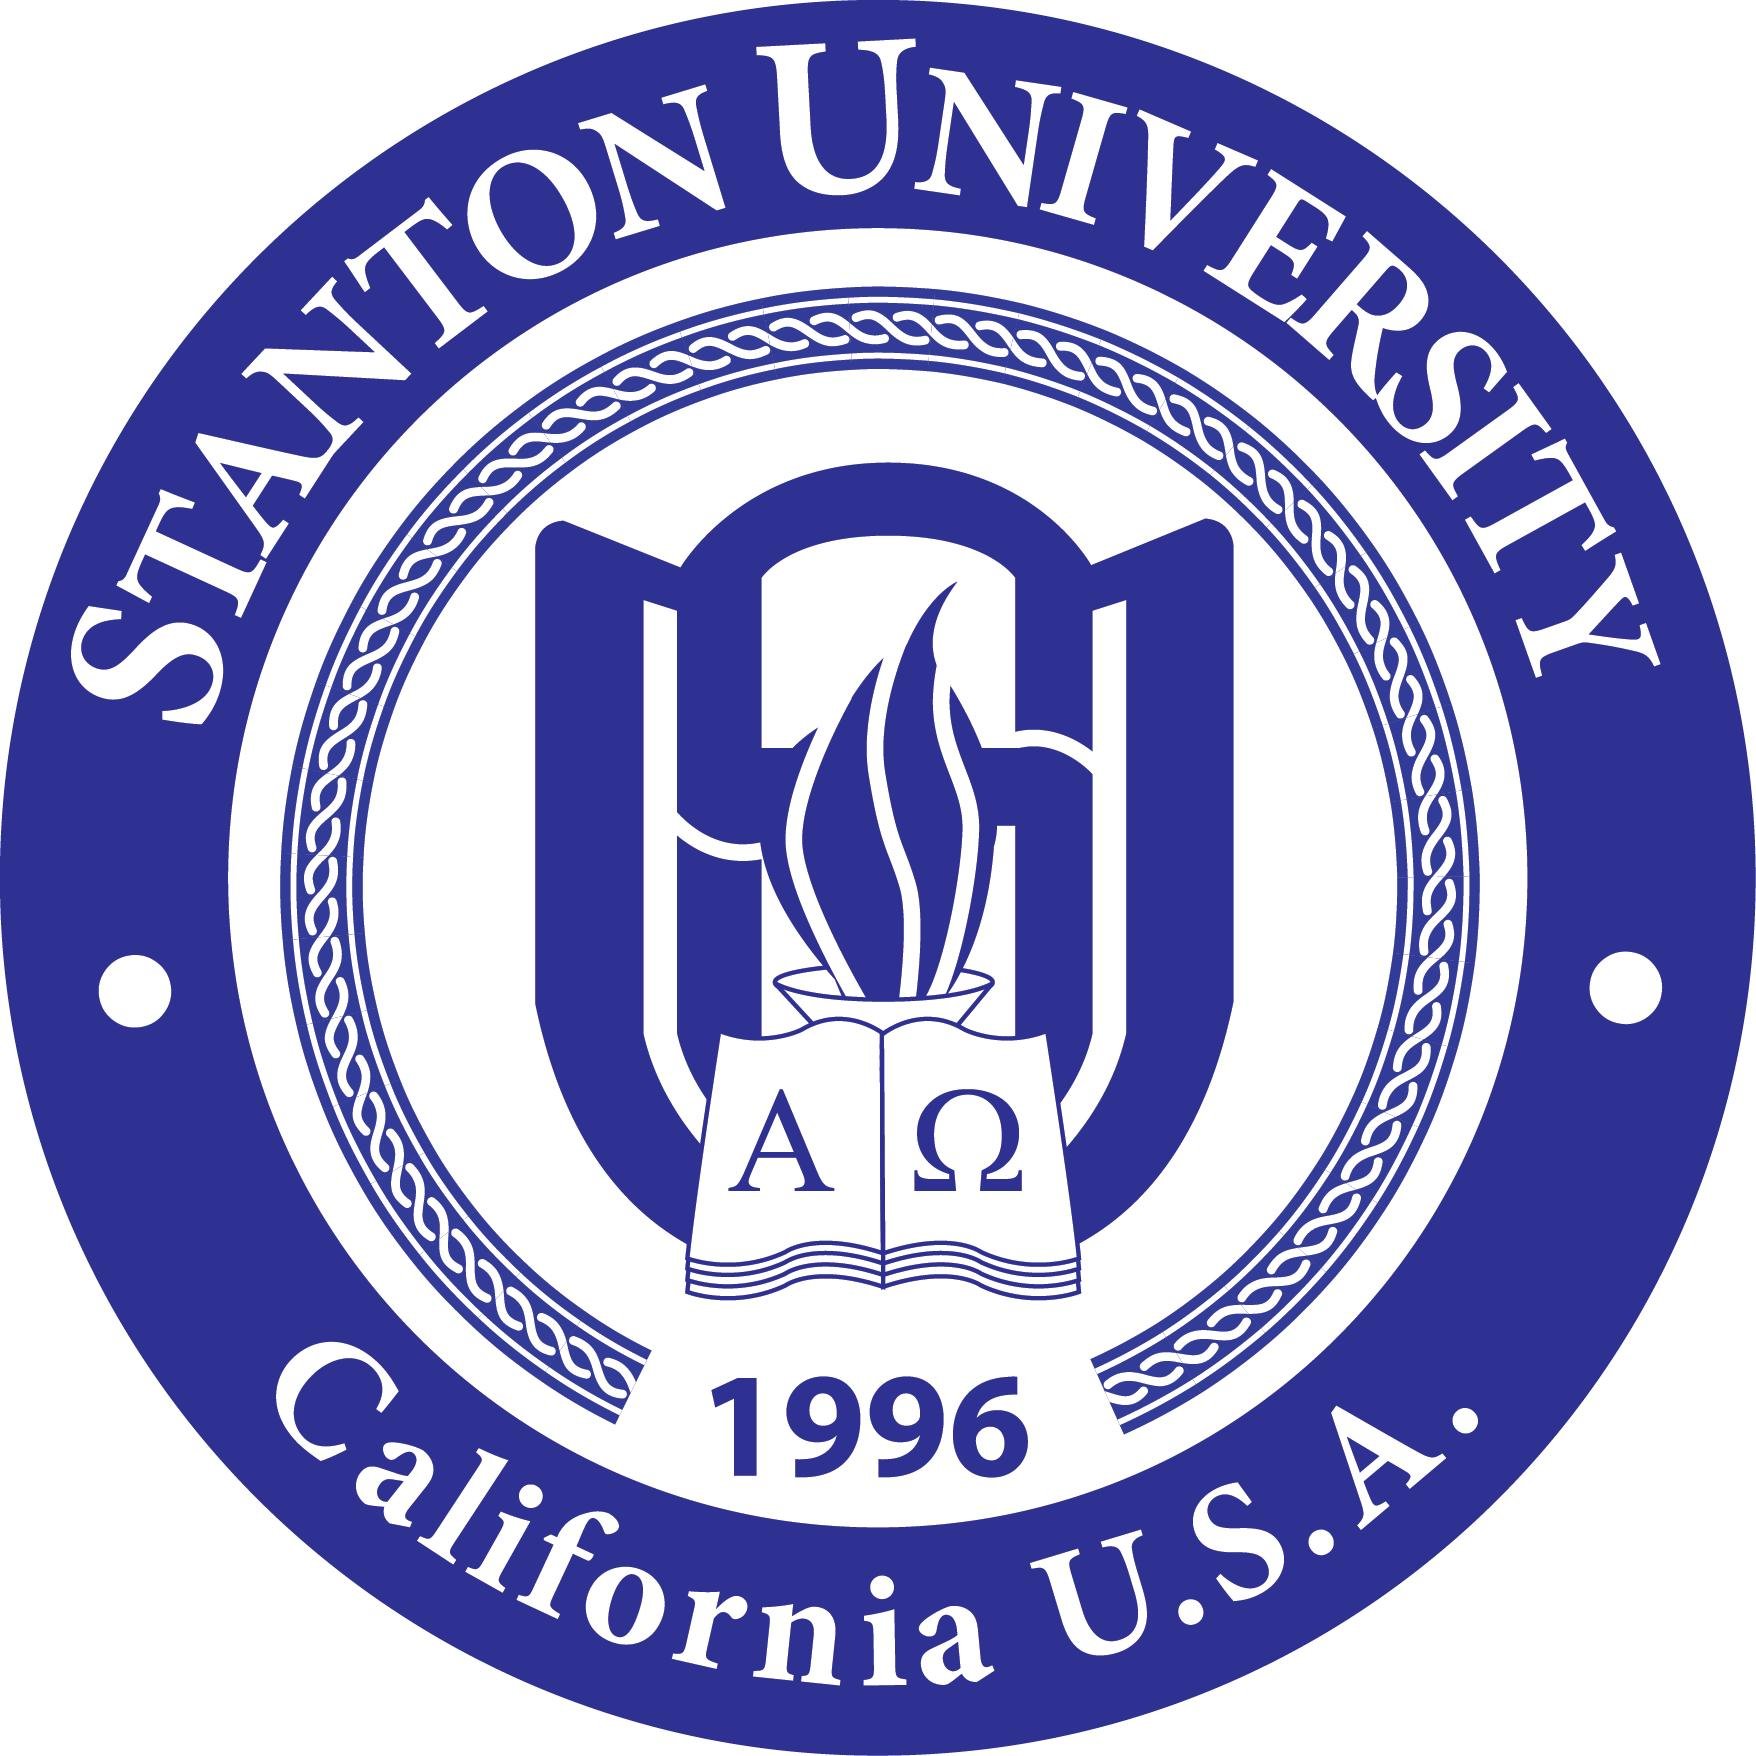 Stanton University